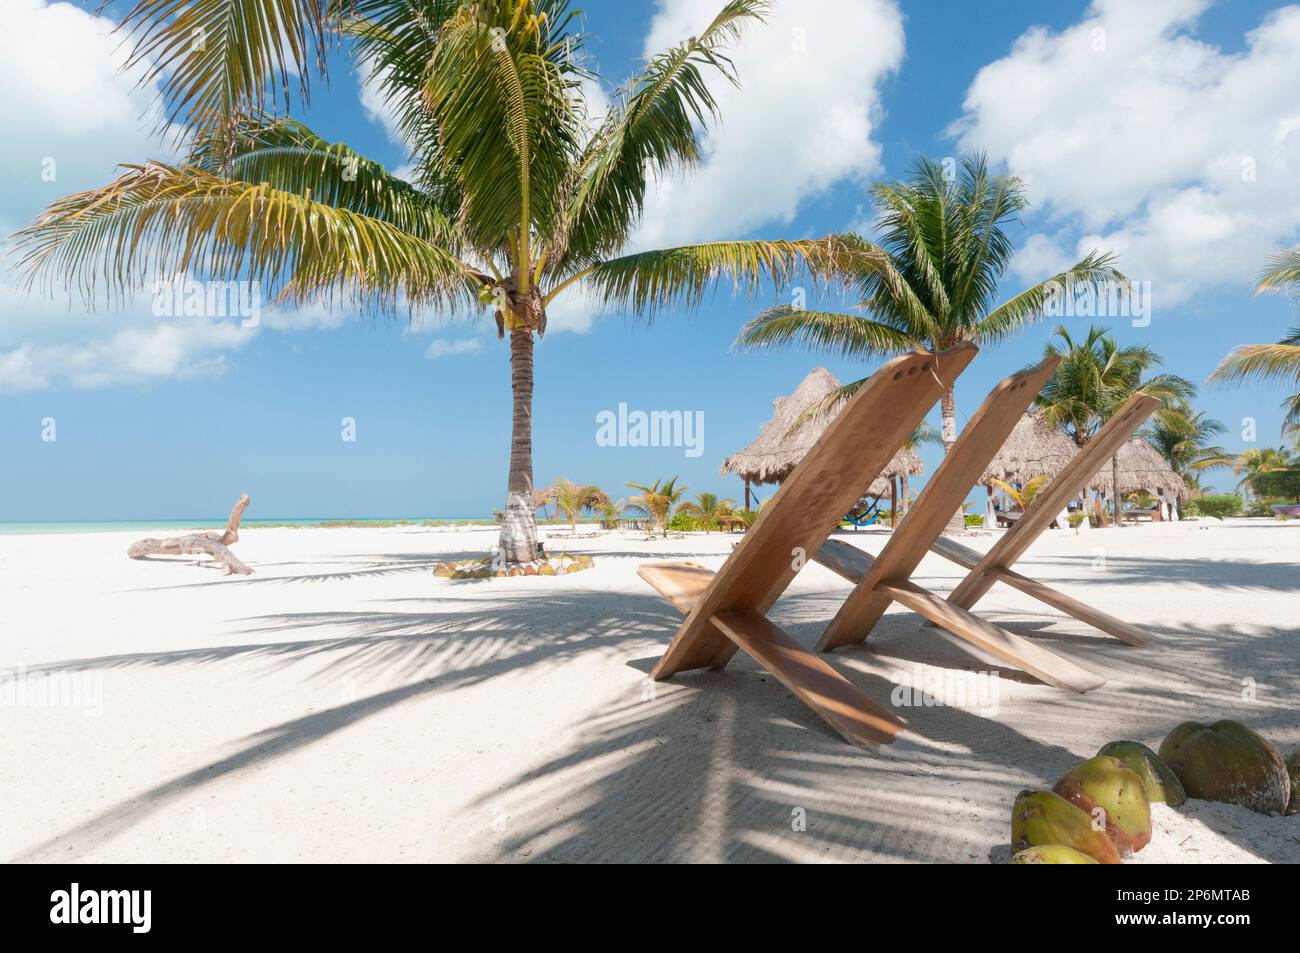 Chaises rustiques sur la plage de sable blanc dans les tropiques avec des palmiers contre le ciel bleu. Holbox Island, Mexique. Concept de voyage de vacances Banque D'Images